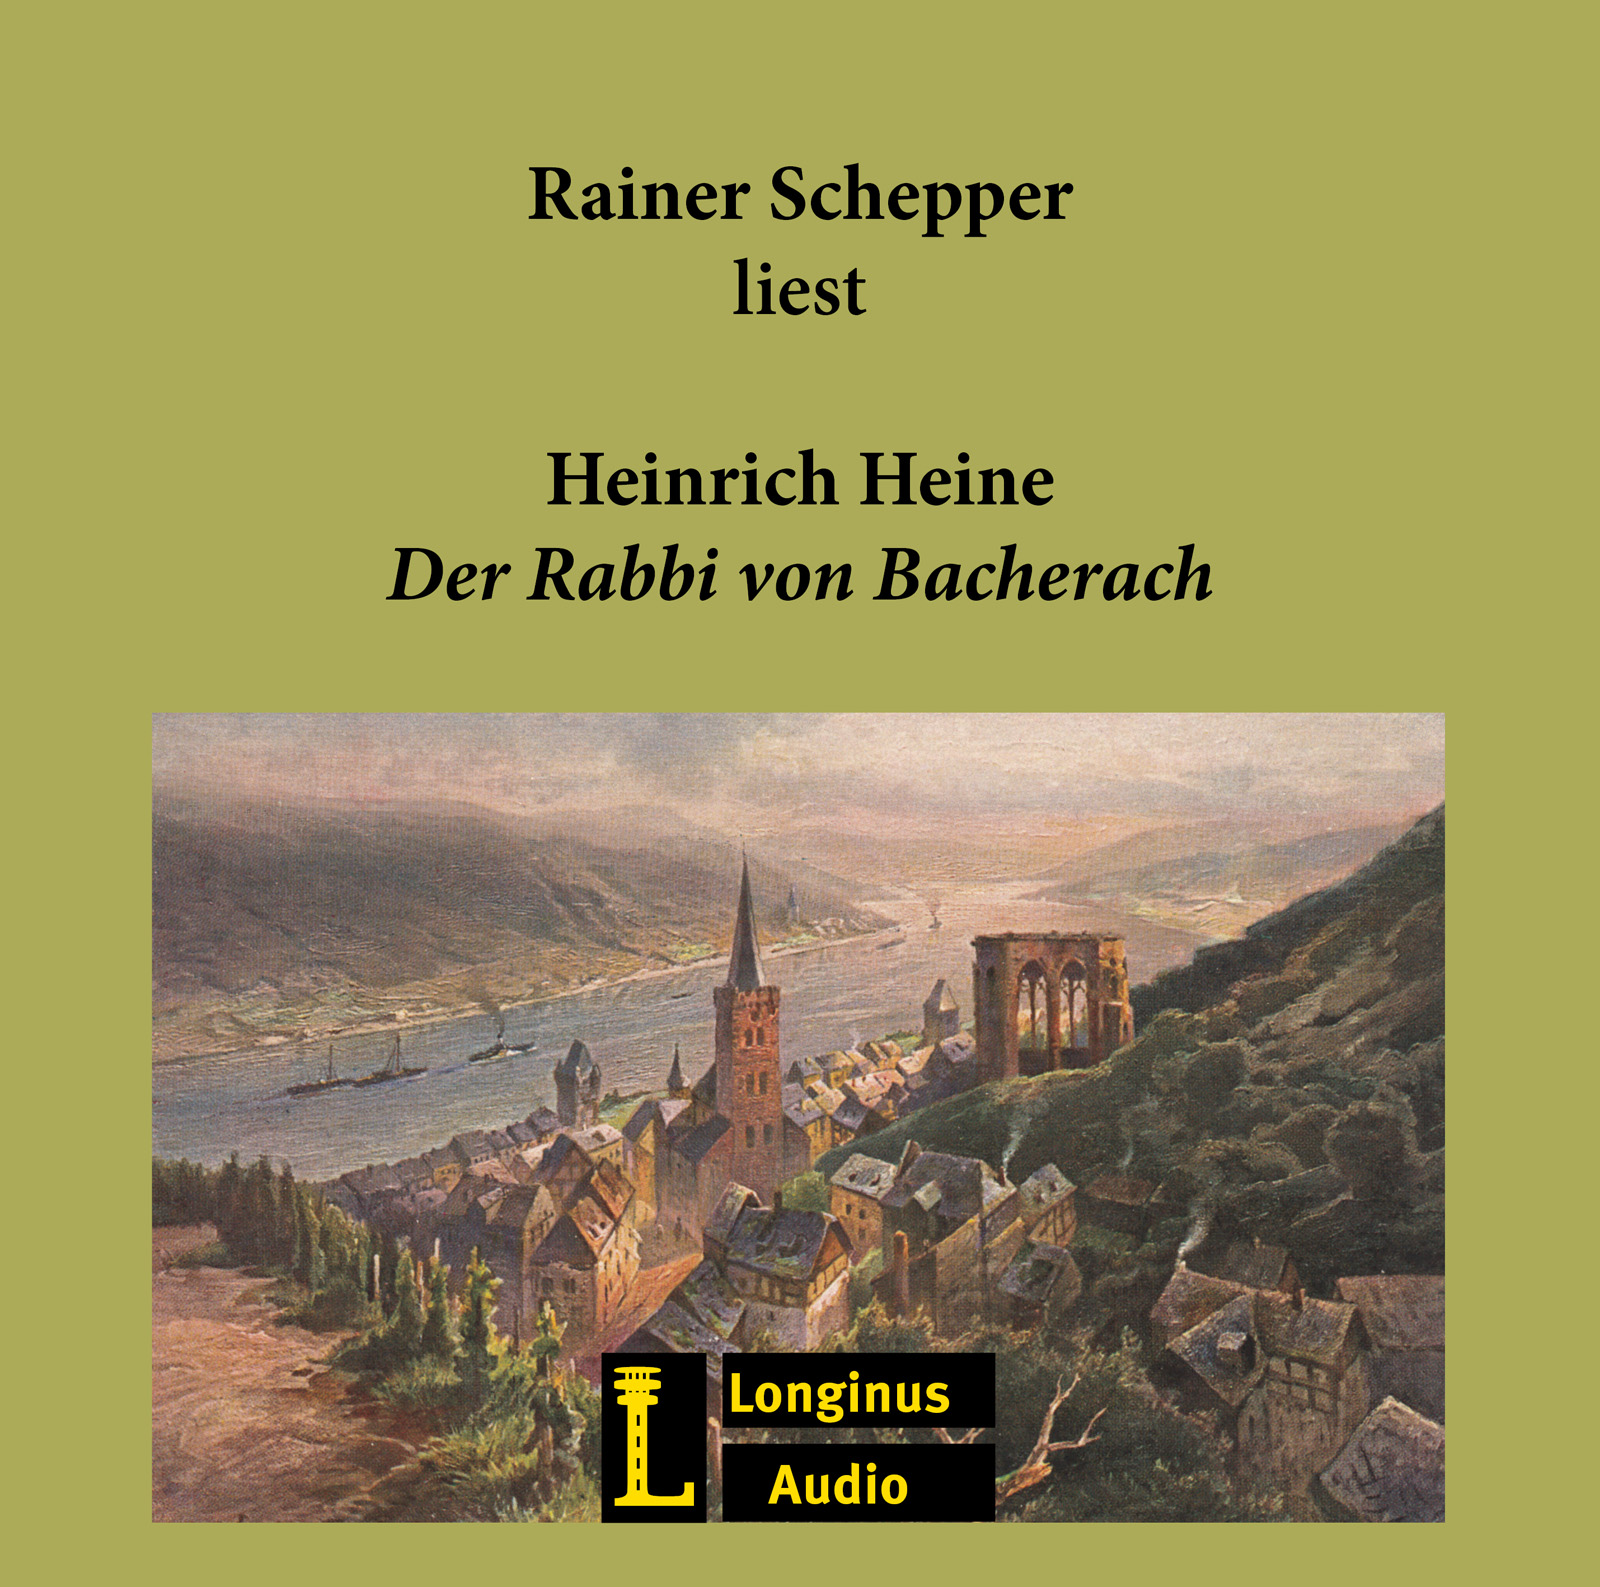 Rainer Schepper liest "Der Rabbi von Bacherach" - Hörbuch